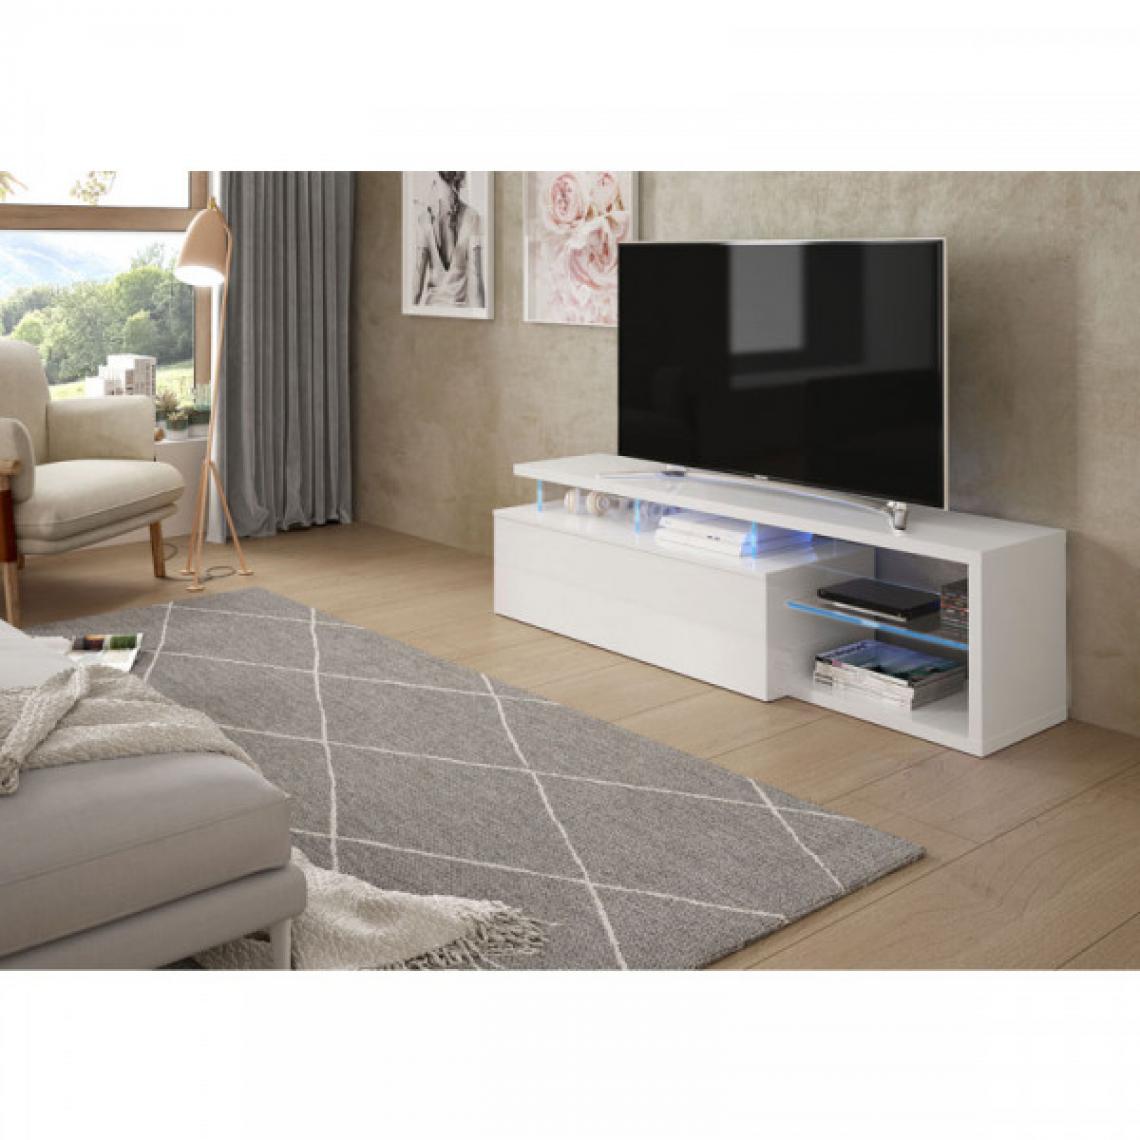 Dansmamaison - Meuble TV 1 porte à LEDs Blanc - WANGA - L 150 x l 41 x H 43 cm - Meubles TV, Hi-Fi